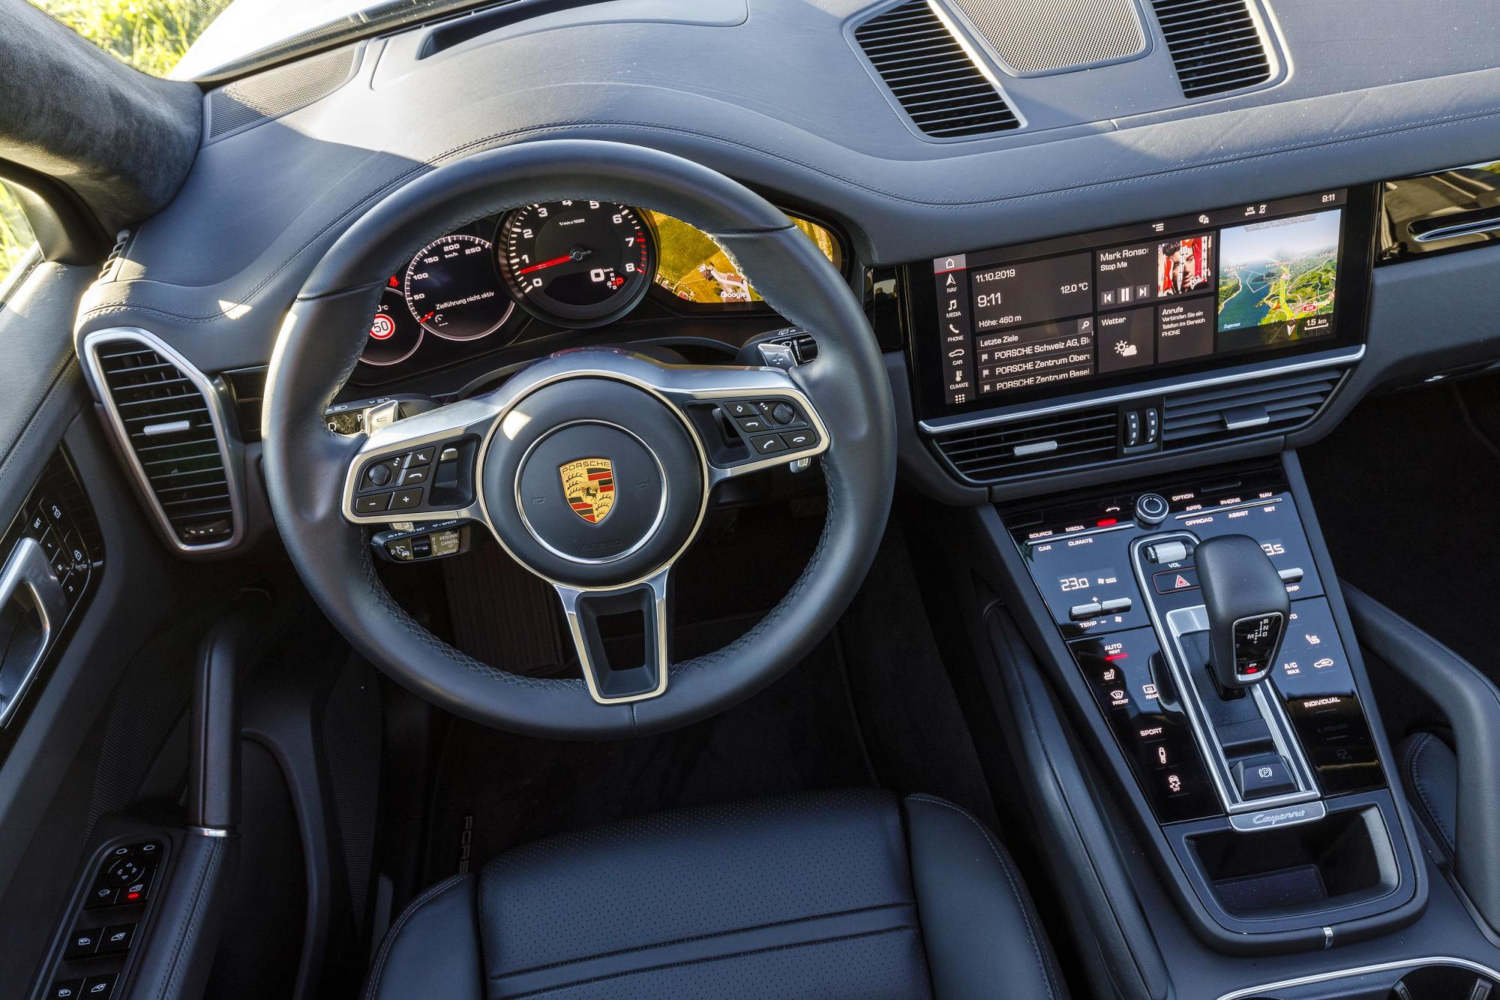 Inside the Porsche Cayenne luxury SUV